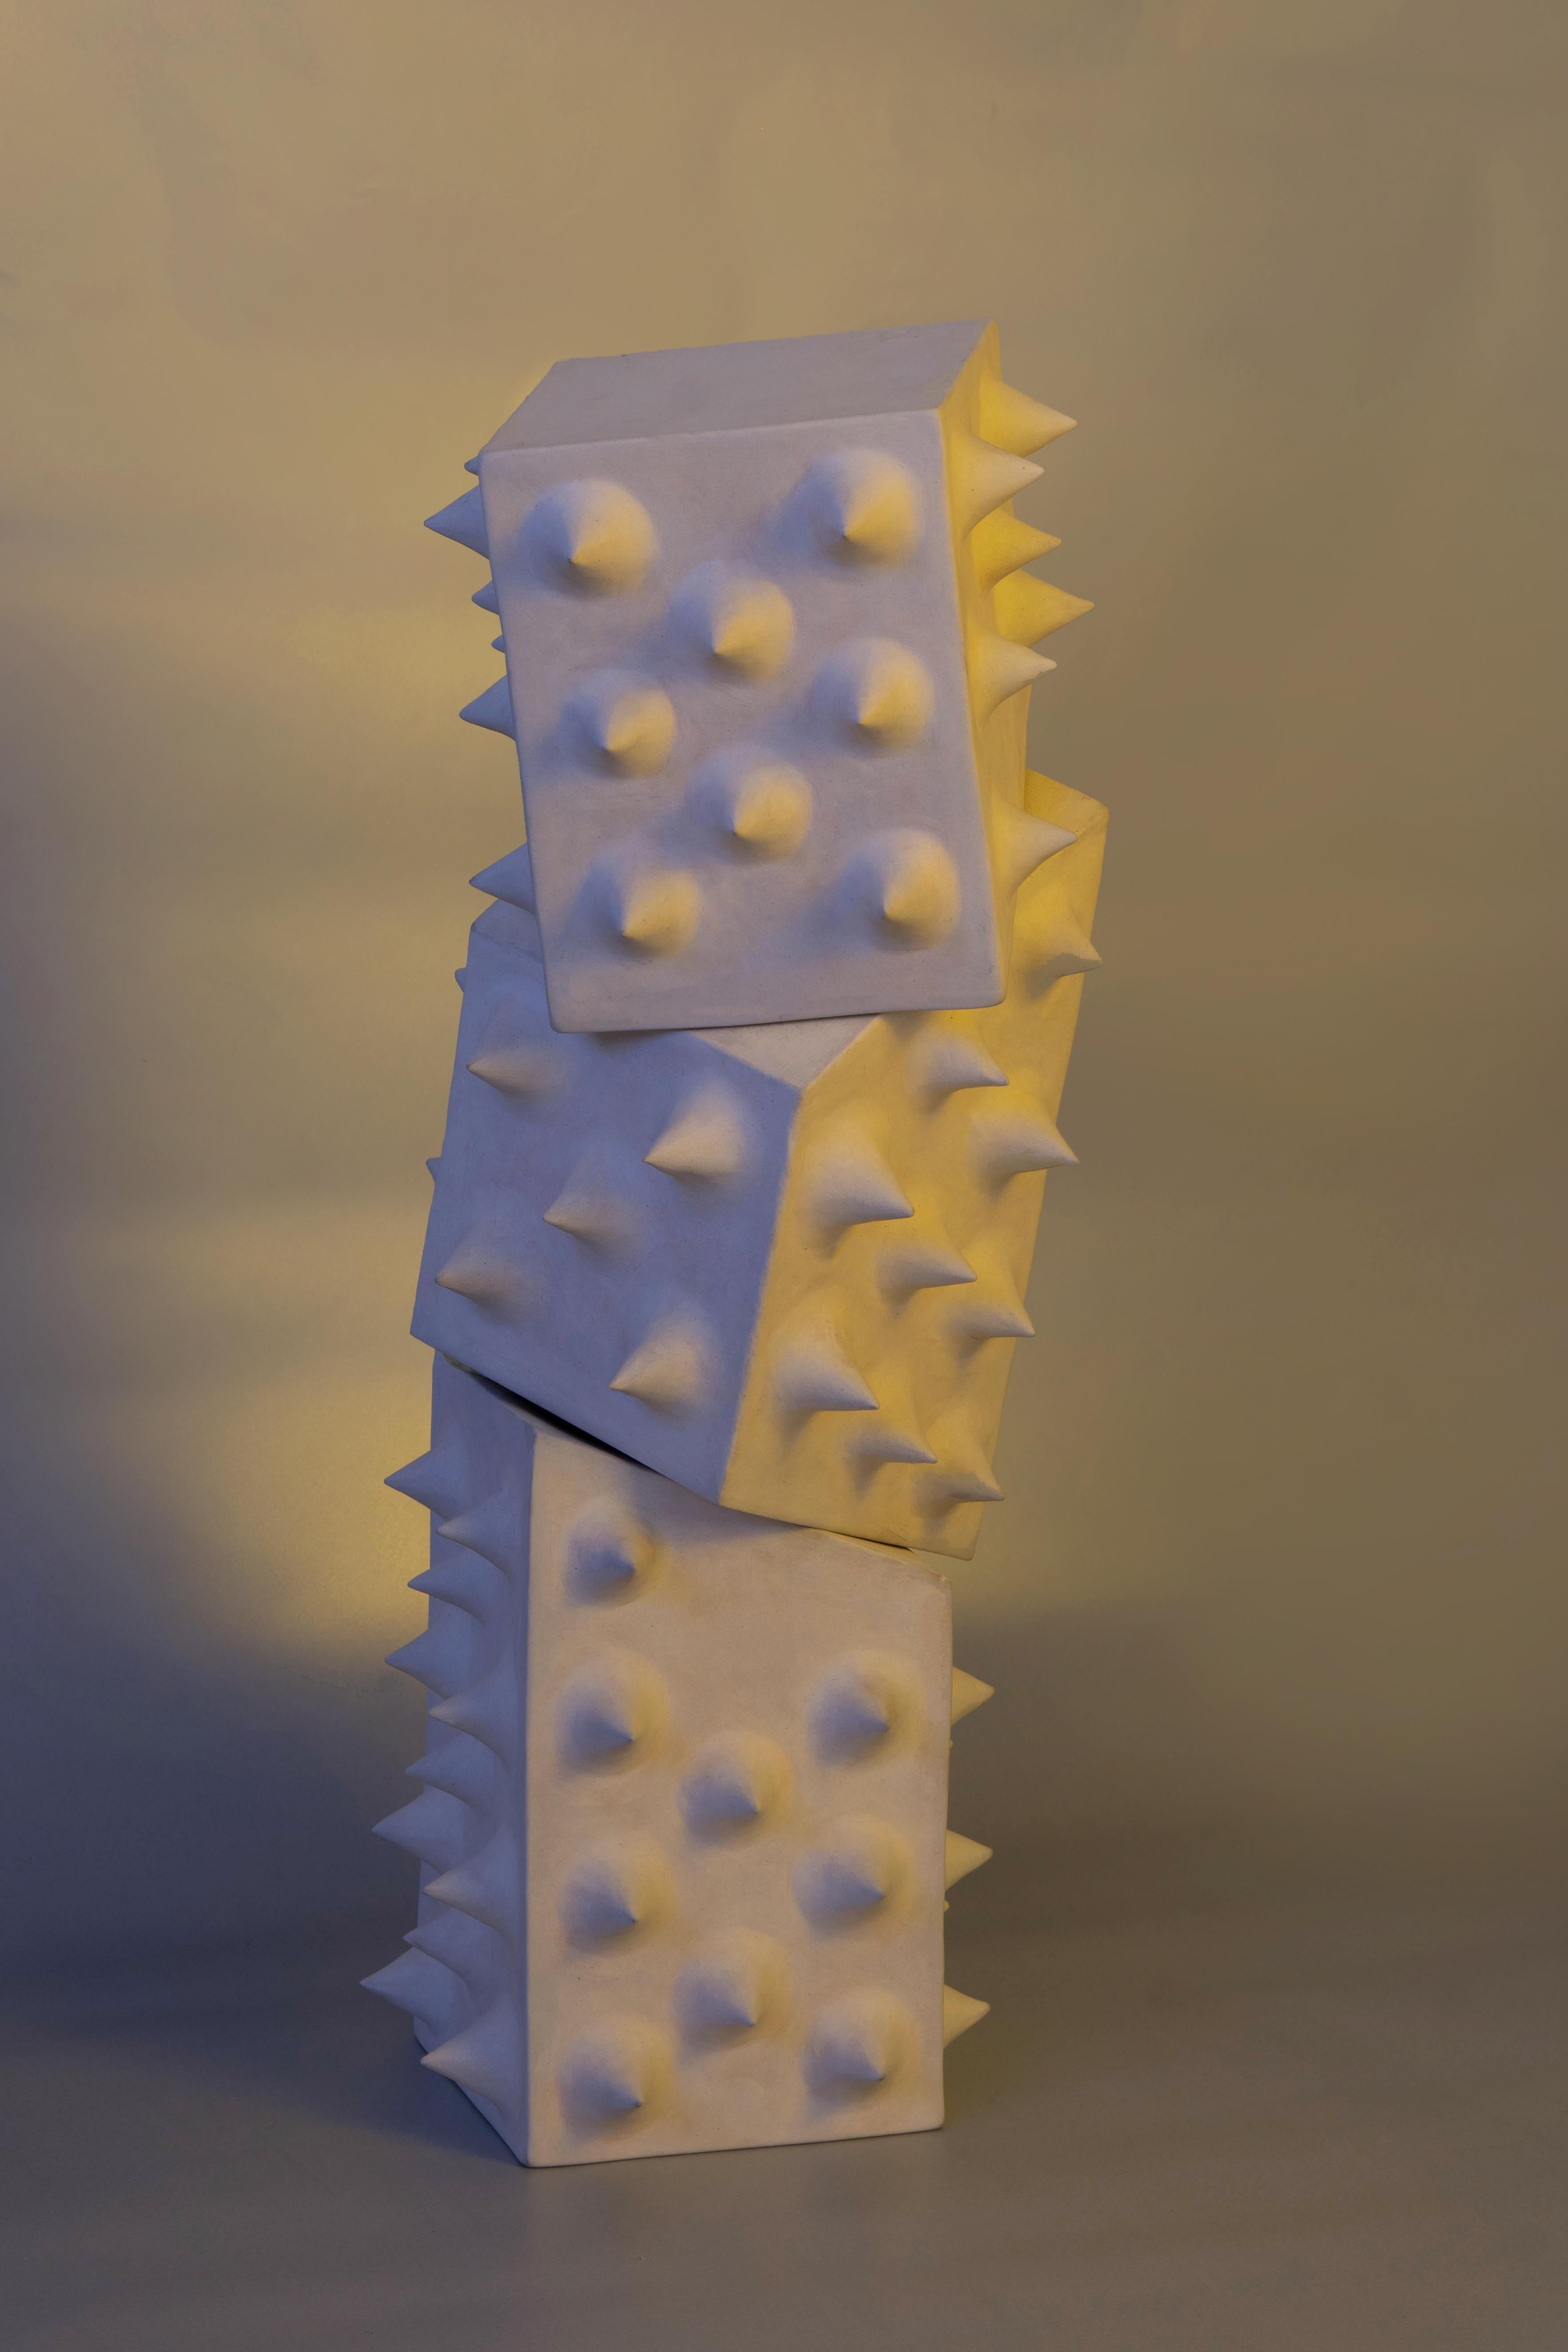 Transworm Dreiteilige Schnecke von Alina Rotzinger
Abmessungen: H 80 x B 25 x T 25 cm.
MATERIALIEN: Phenolisches Birkensperrholz, behandelt und lackiert mit Epoxidharz, Metallgestell aus Stahl, lackiert mit Epoxidharz.

Zusammengestellt von Alina